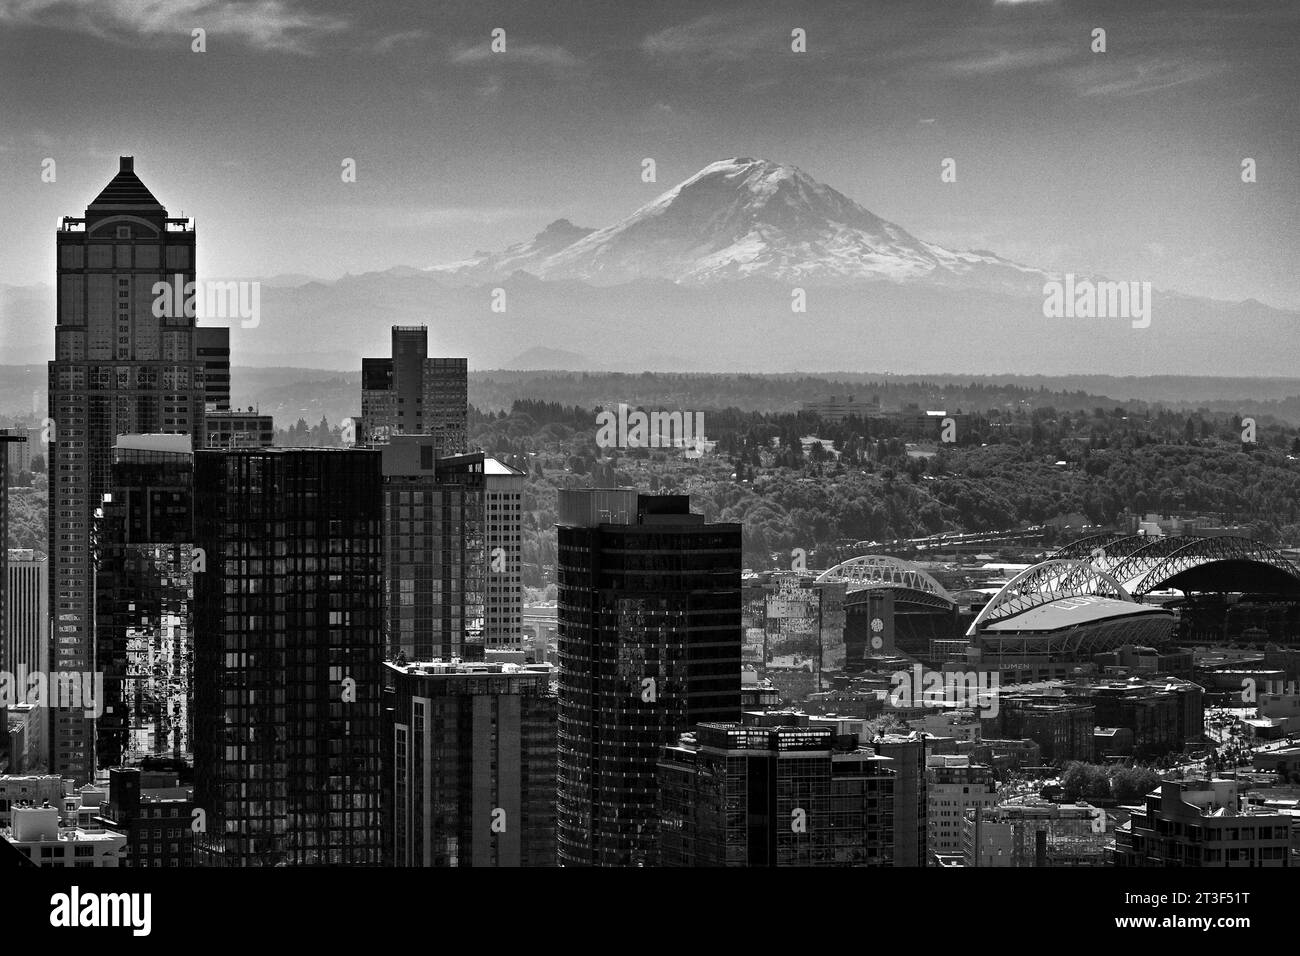 Vue sur Mount Rainier et Seattle Cityscape, WA, États-Unis. Banque D'Images